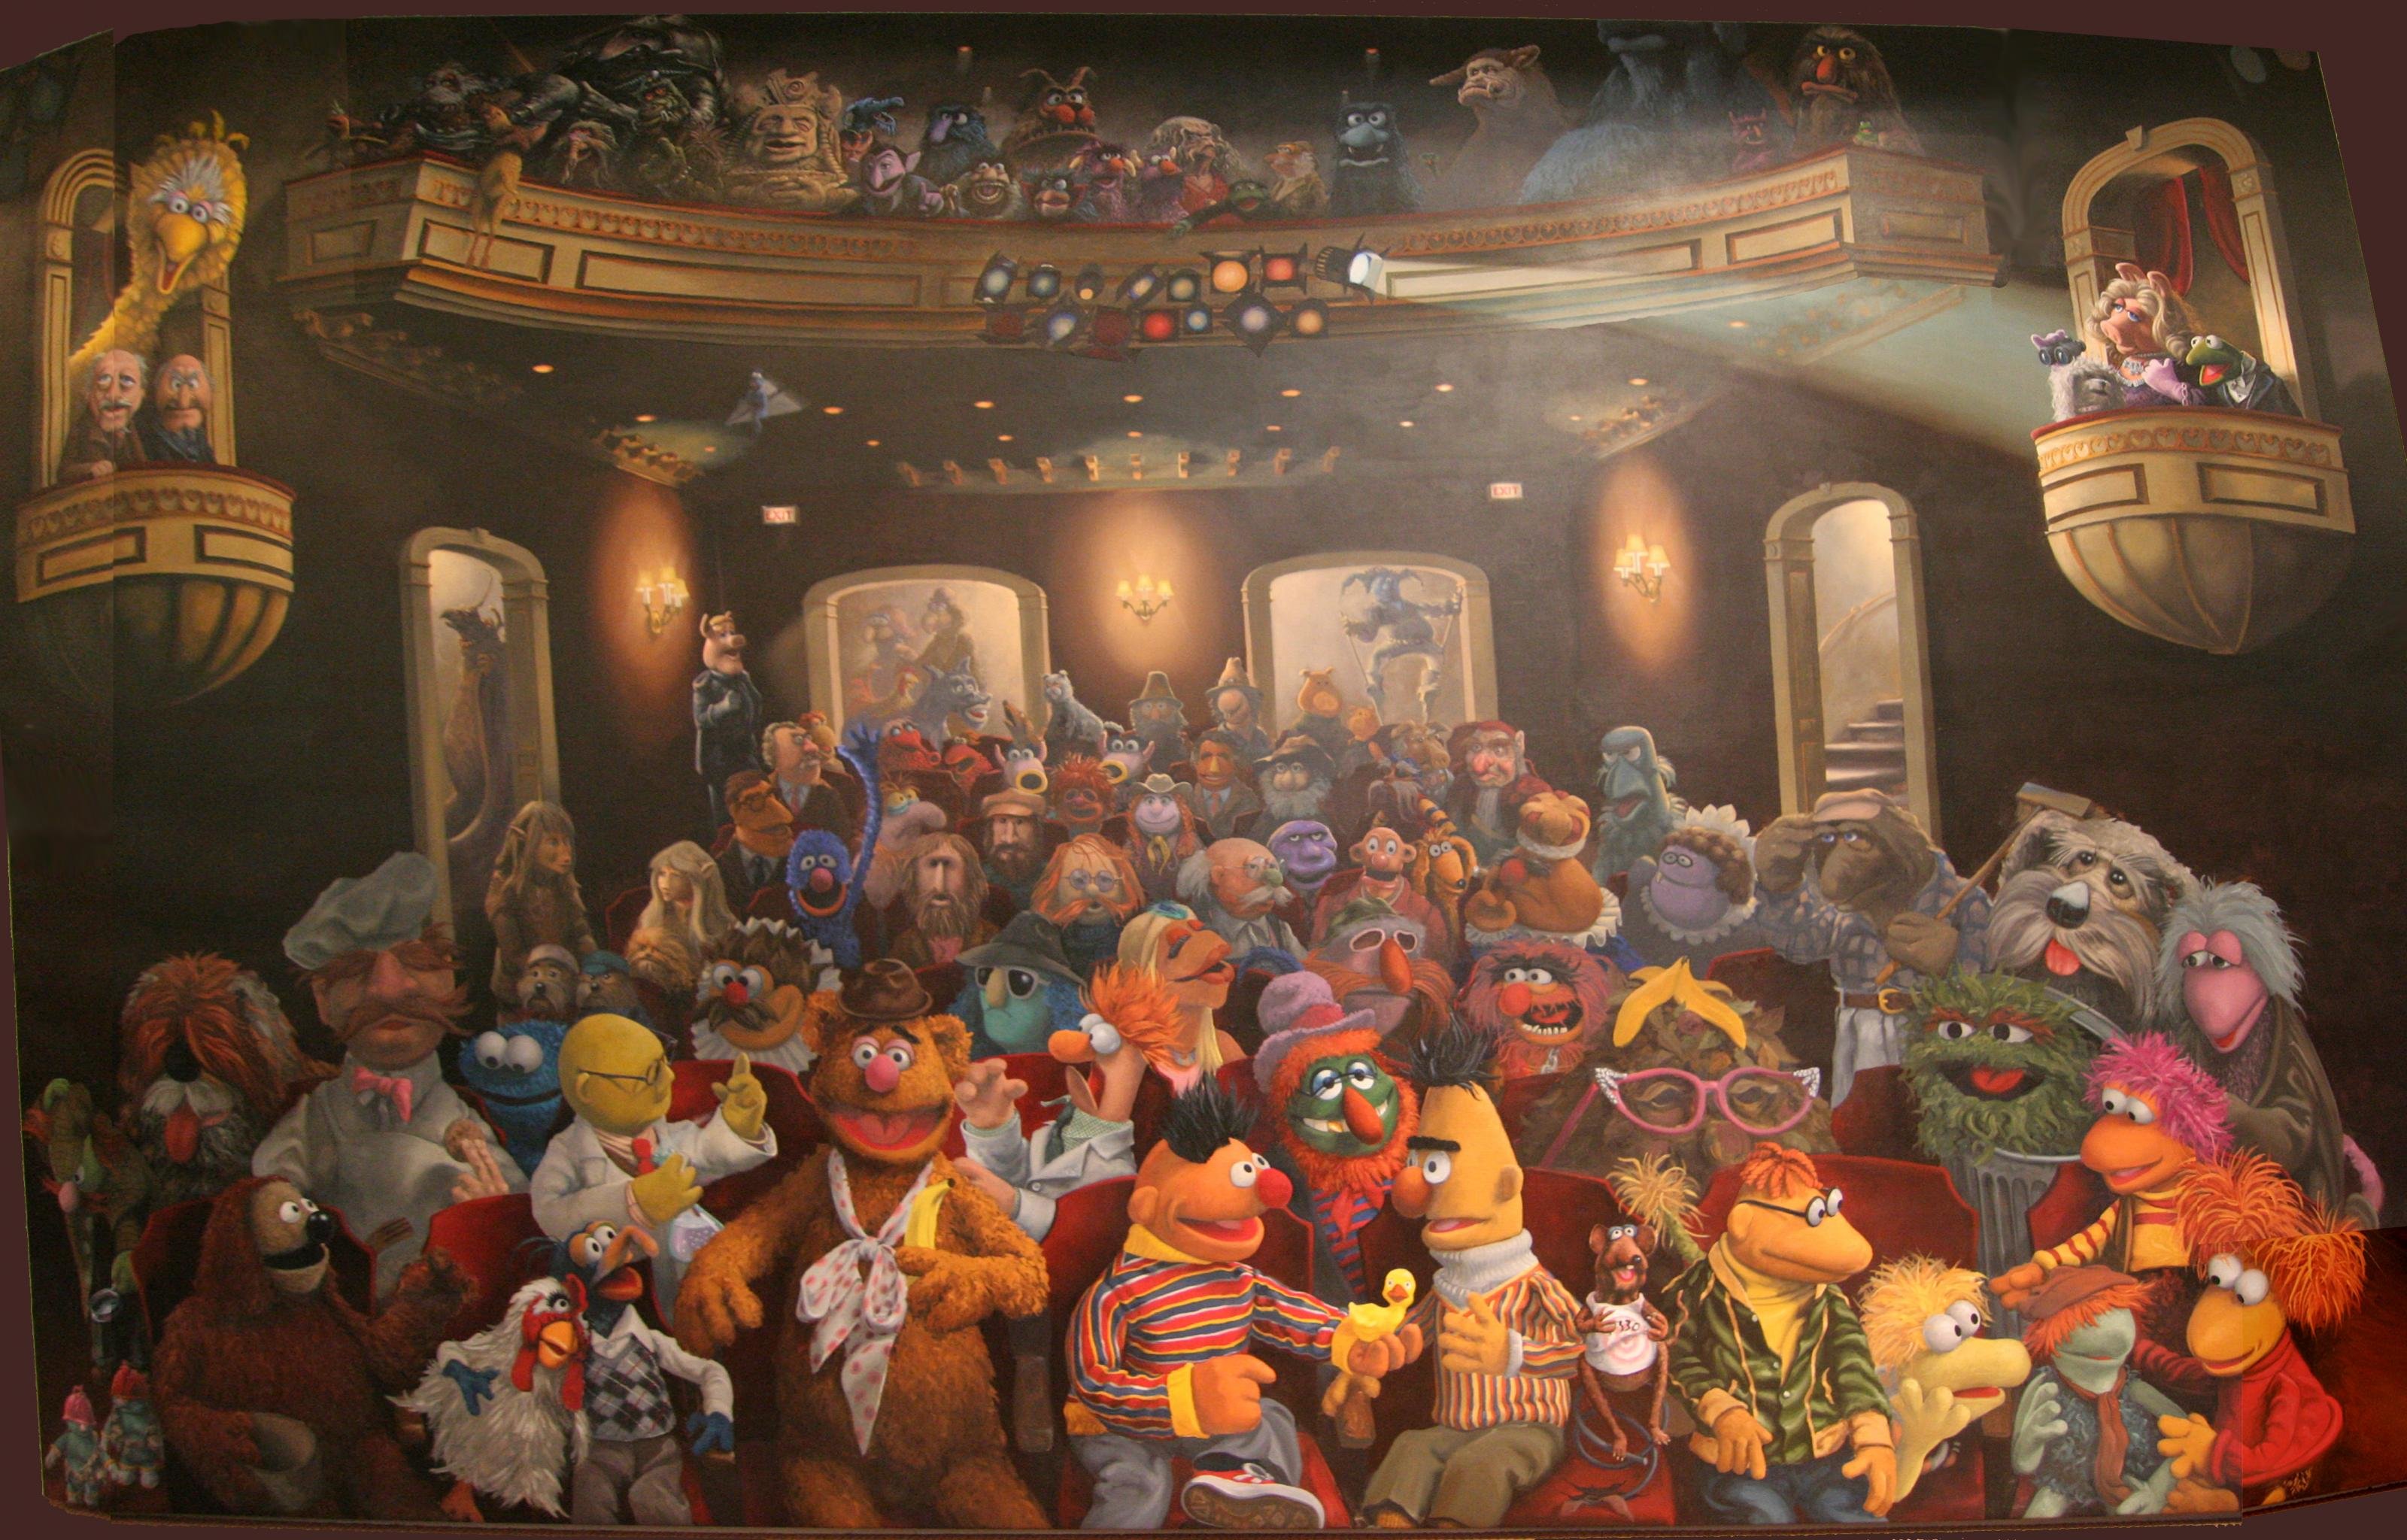 Best The Muppet Show wallpaper ID:315419 for High Resolution hd 3200x2048 desktop